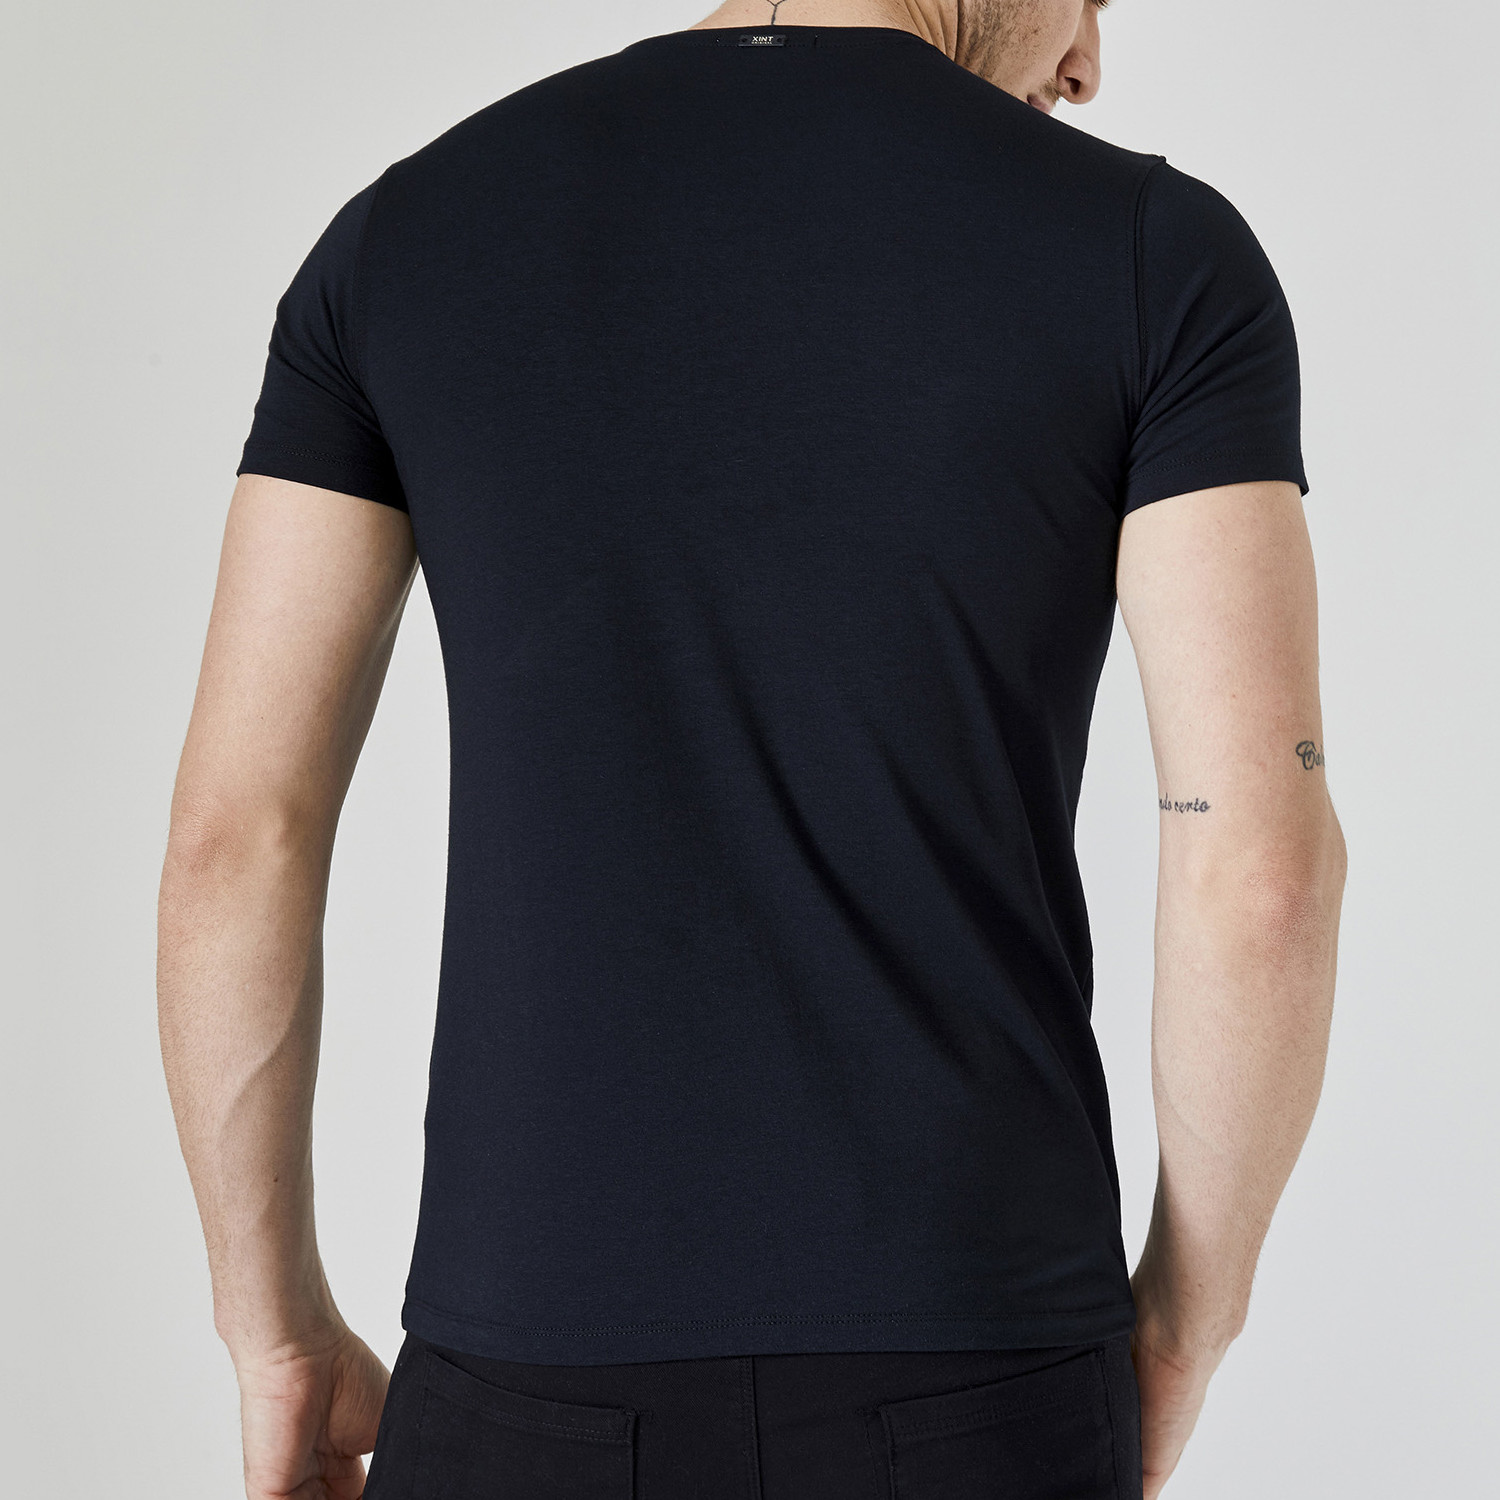 Wilder T-Shirt // Black (M) - Xint - Touch of Modern